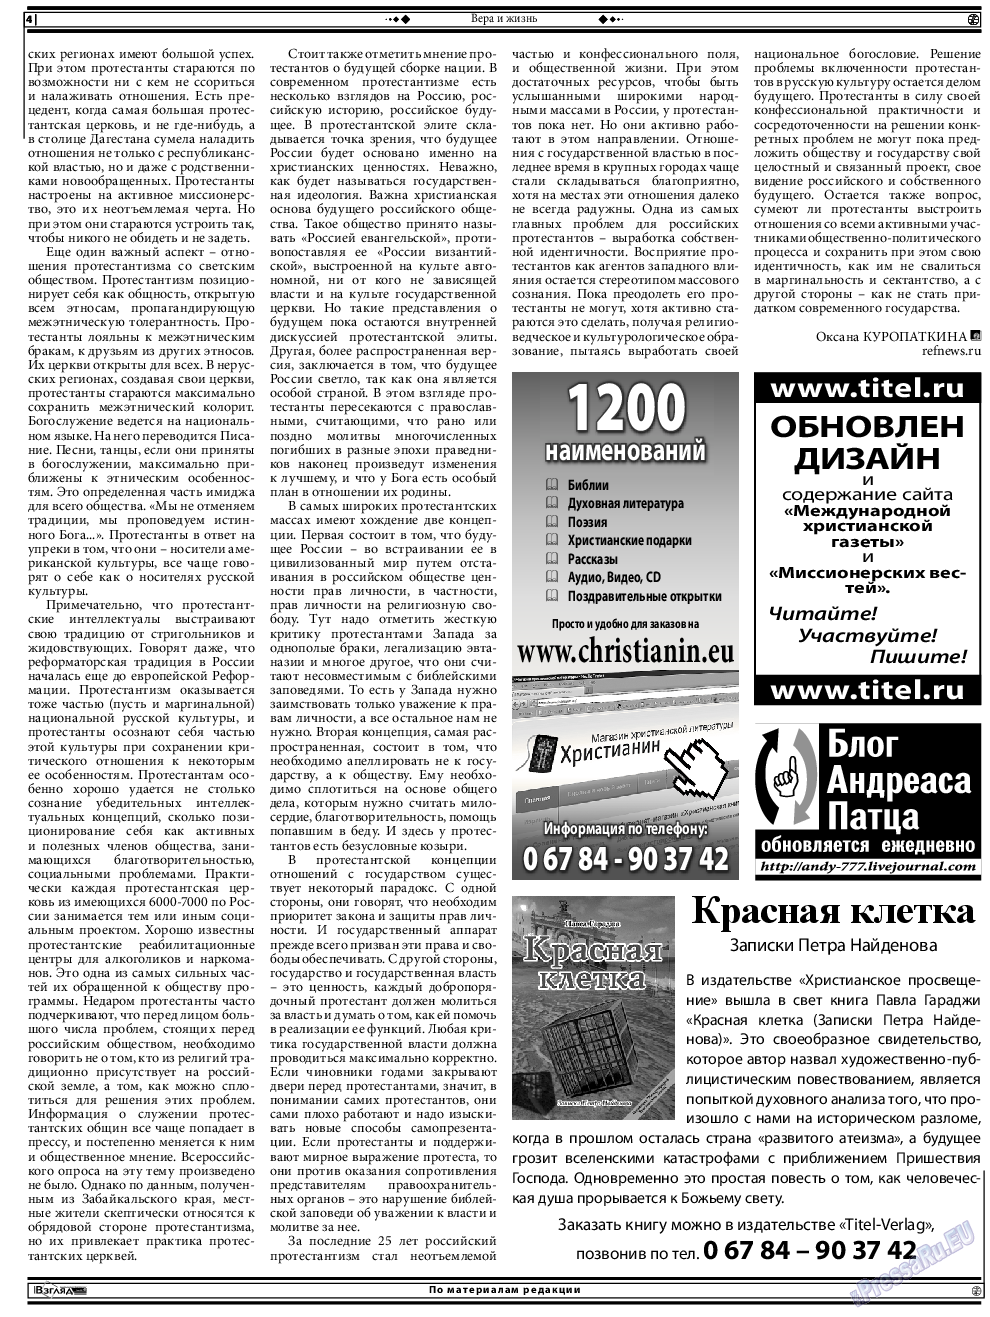 Христианская газета, газета. 2014 №11 стр.18